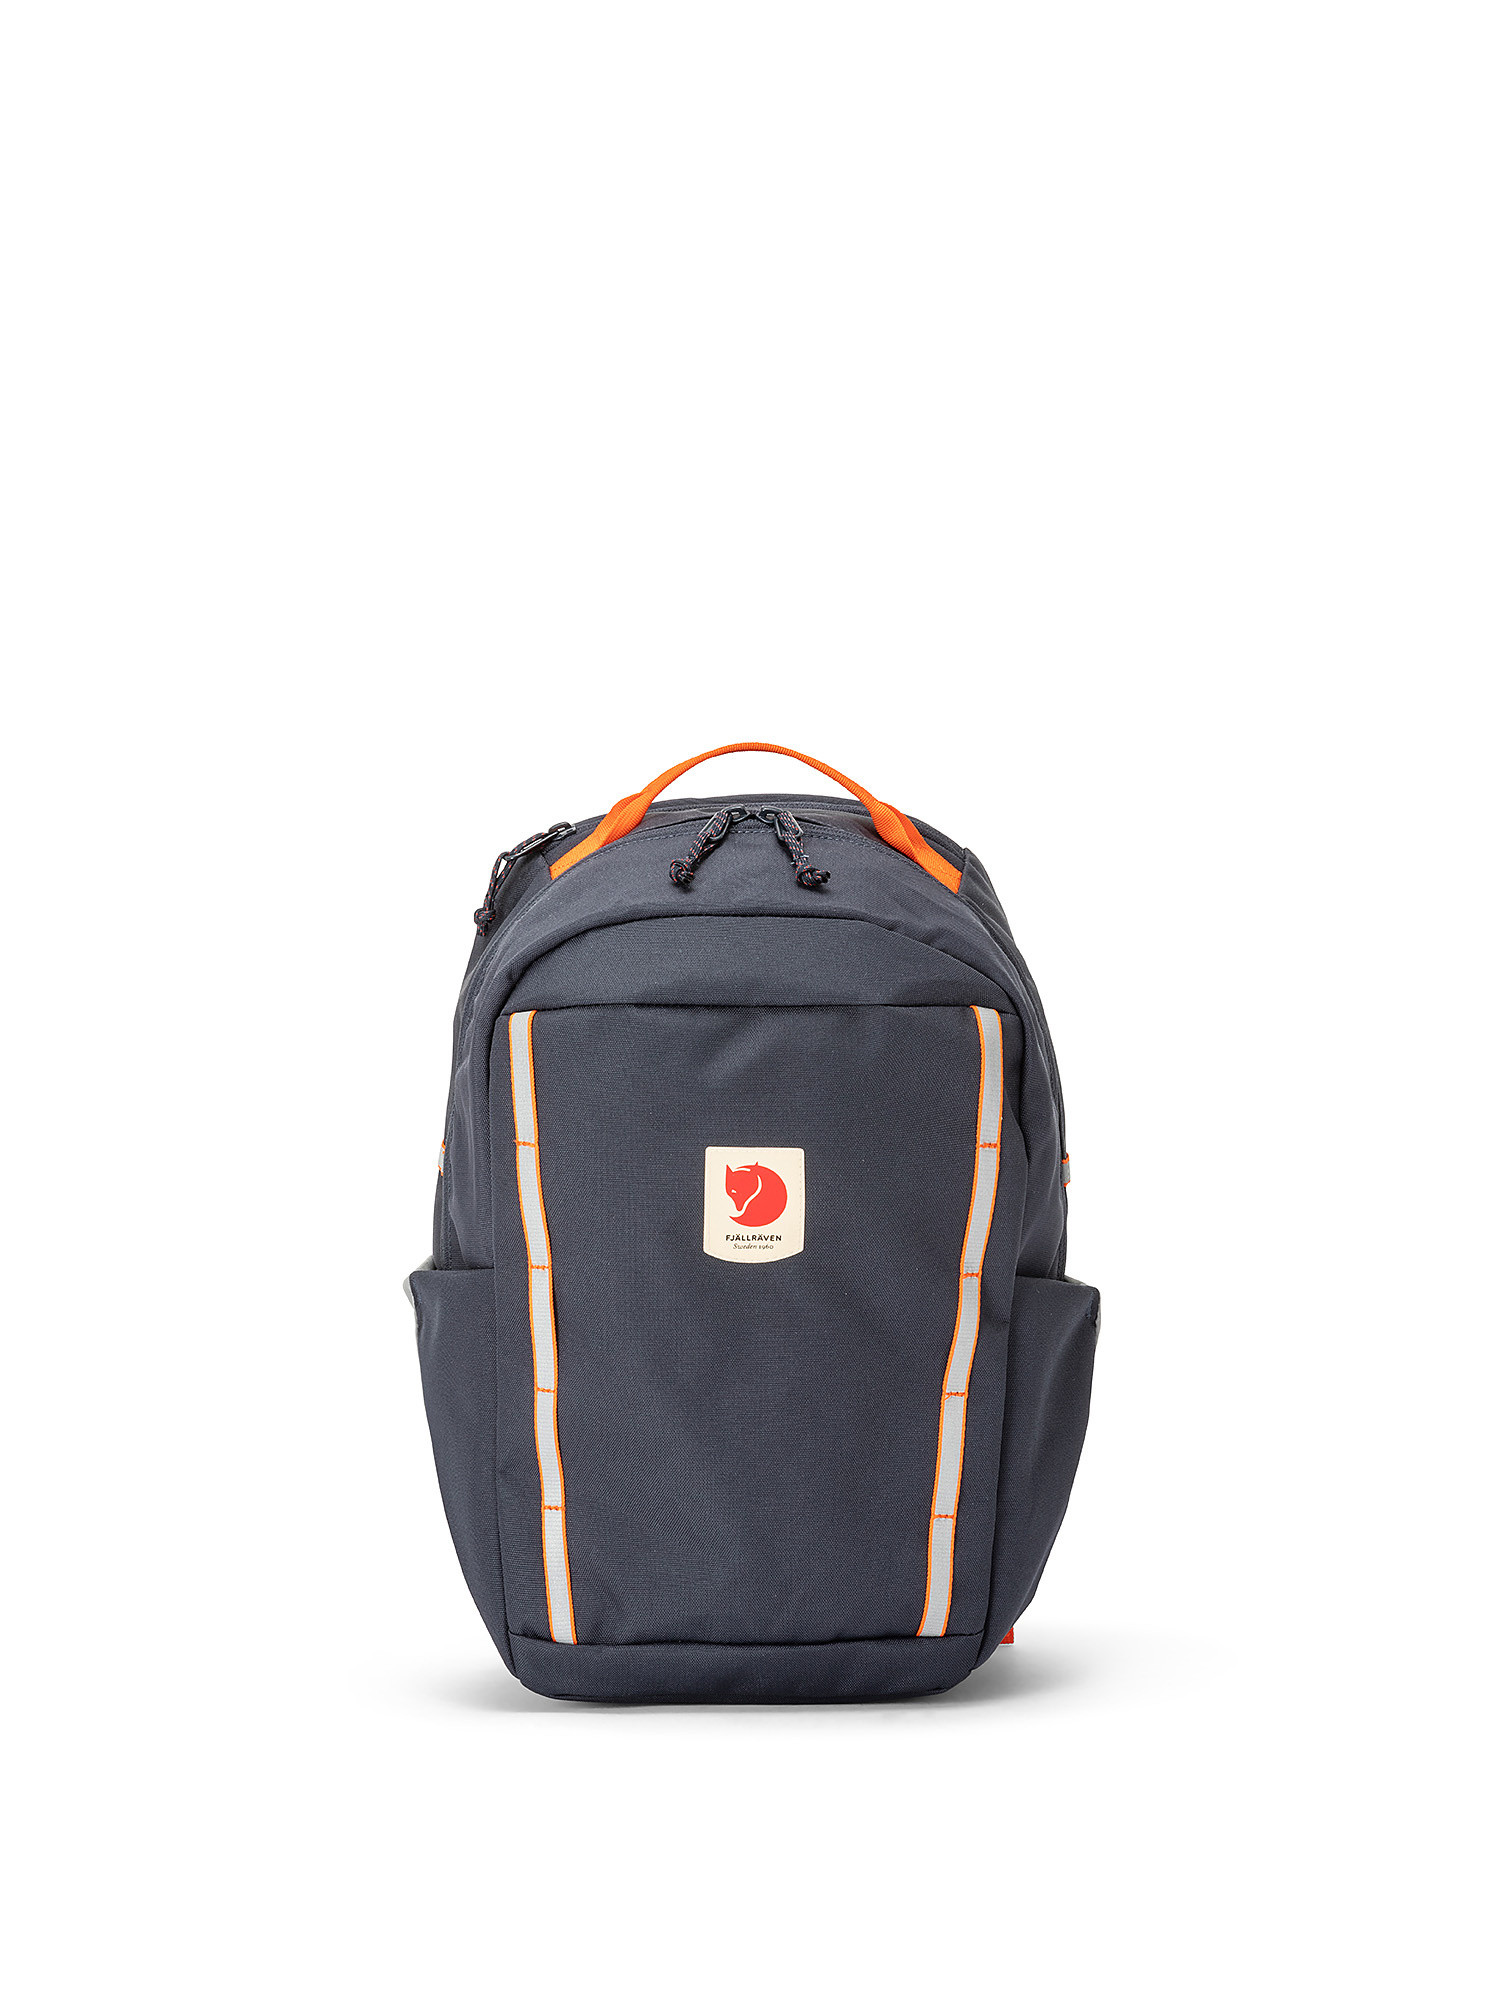 Backpack waterproof capacity of 15 liters, Blue, large image number 0